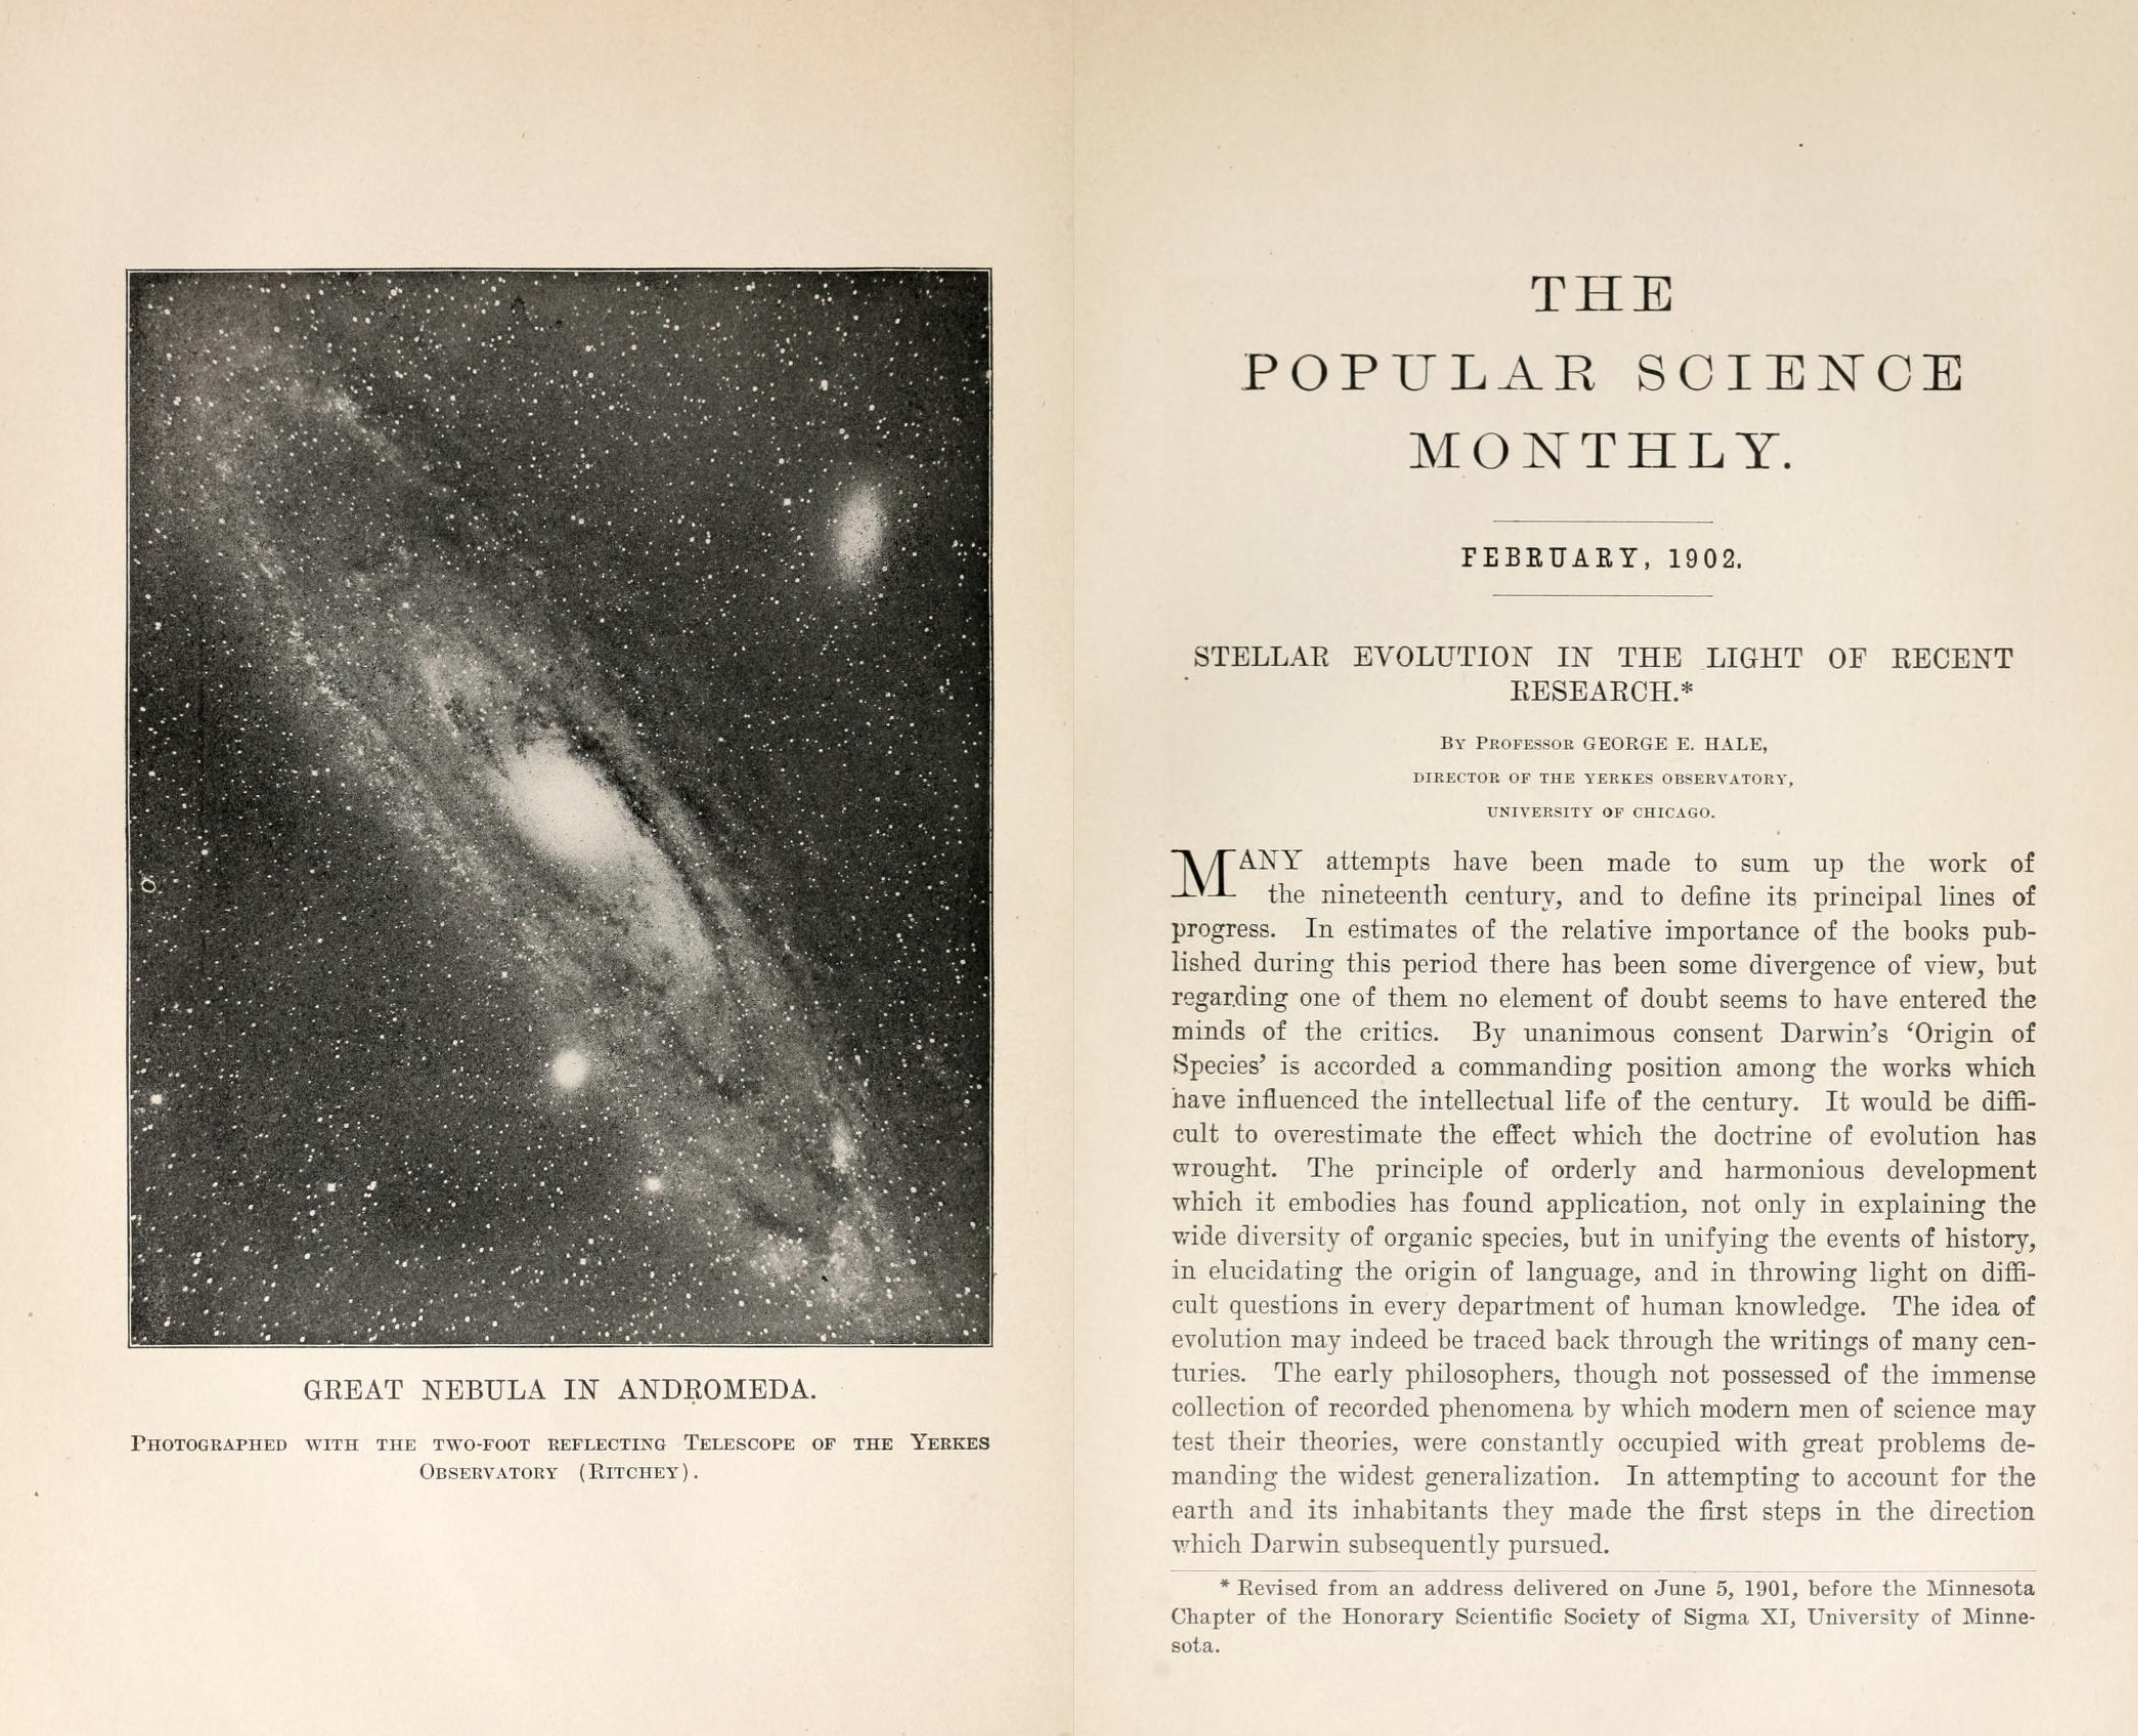 Andromeda in 1902